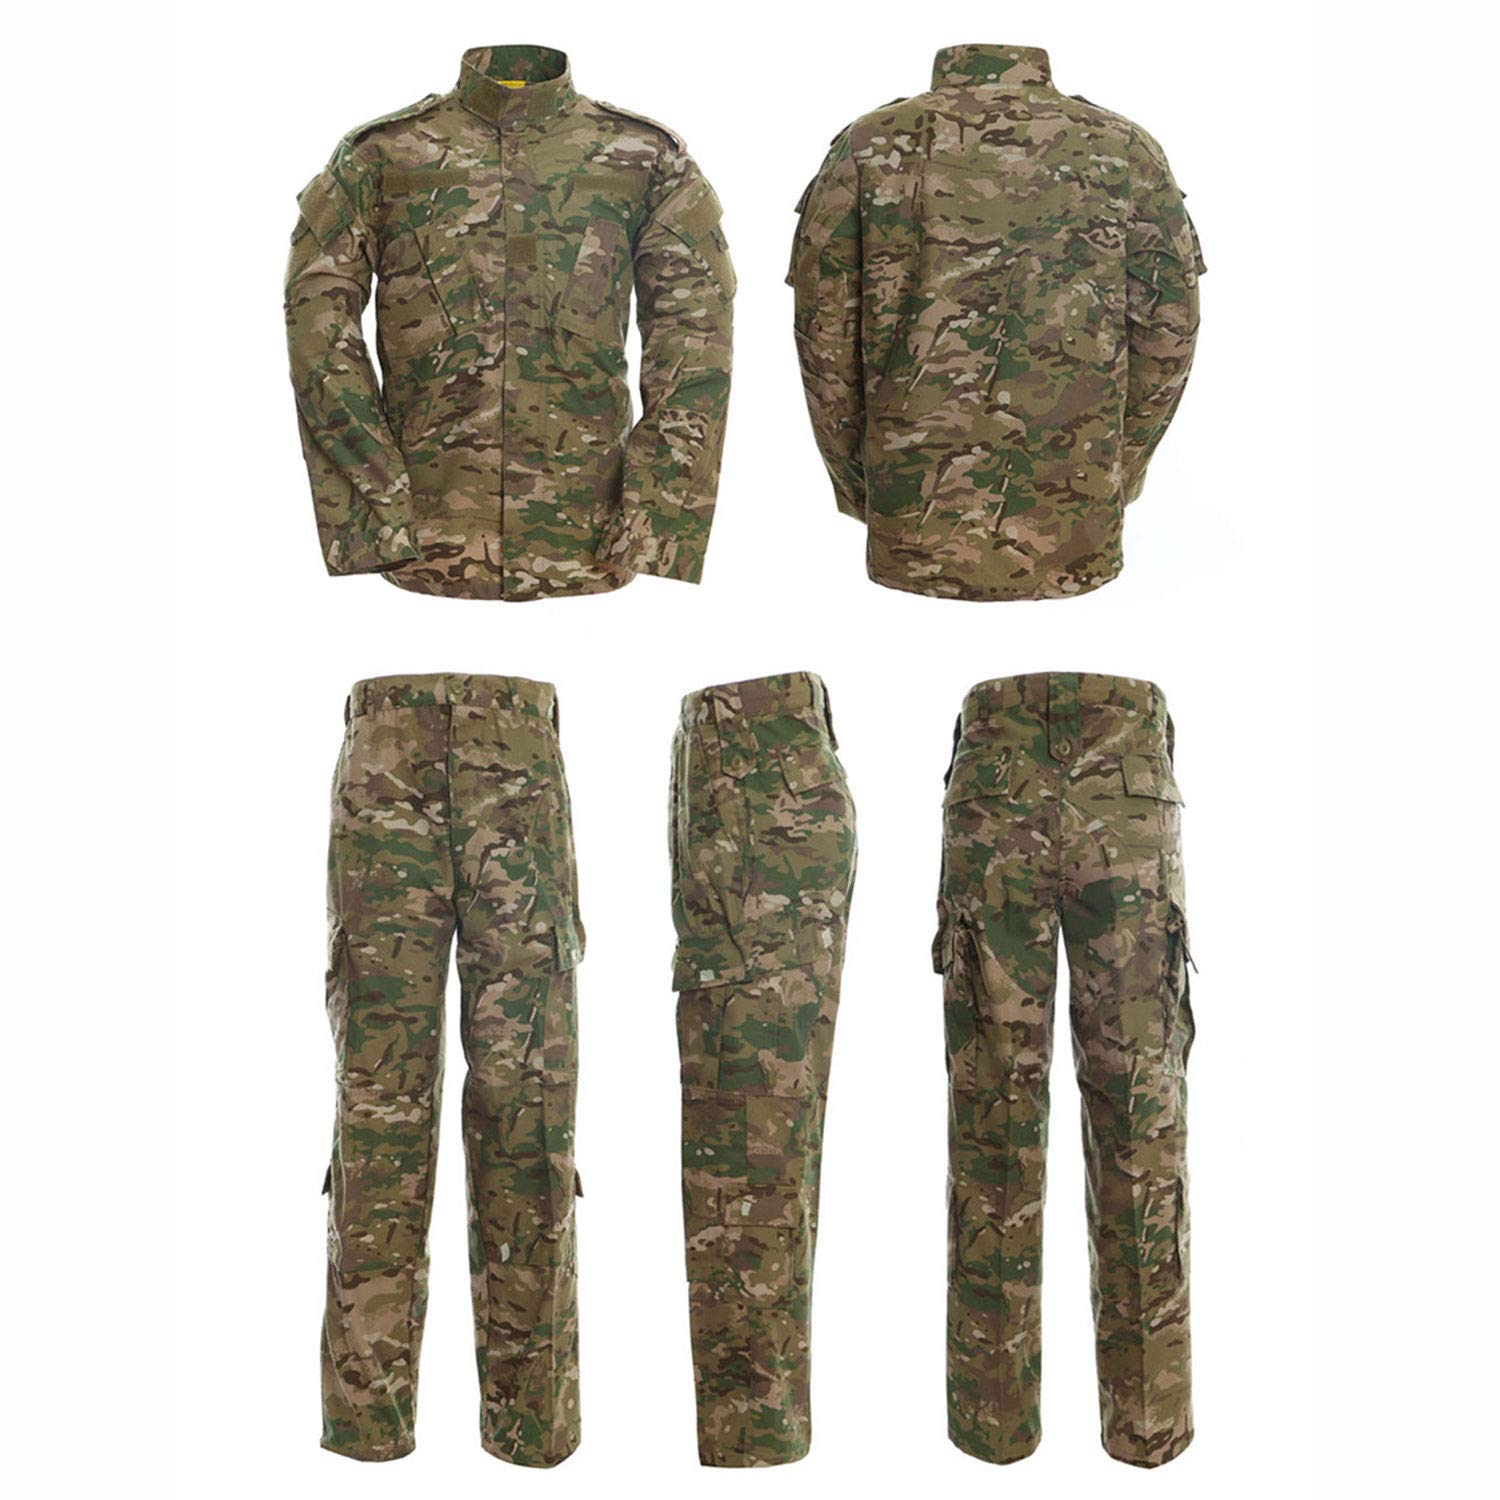 Camo Multicam Men's Tactical Jacket and Pants CP Cloth Uniform